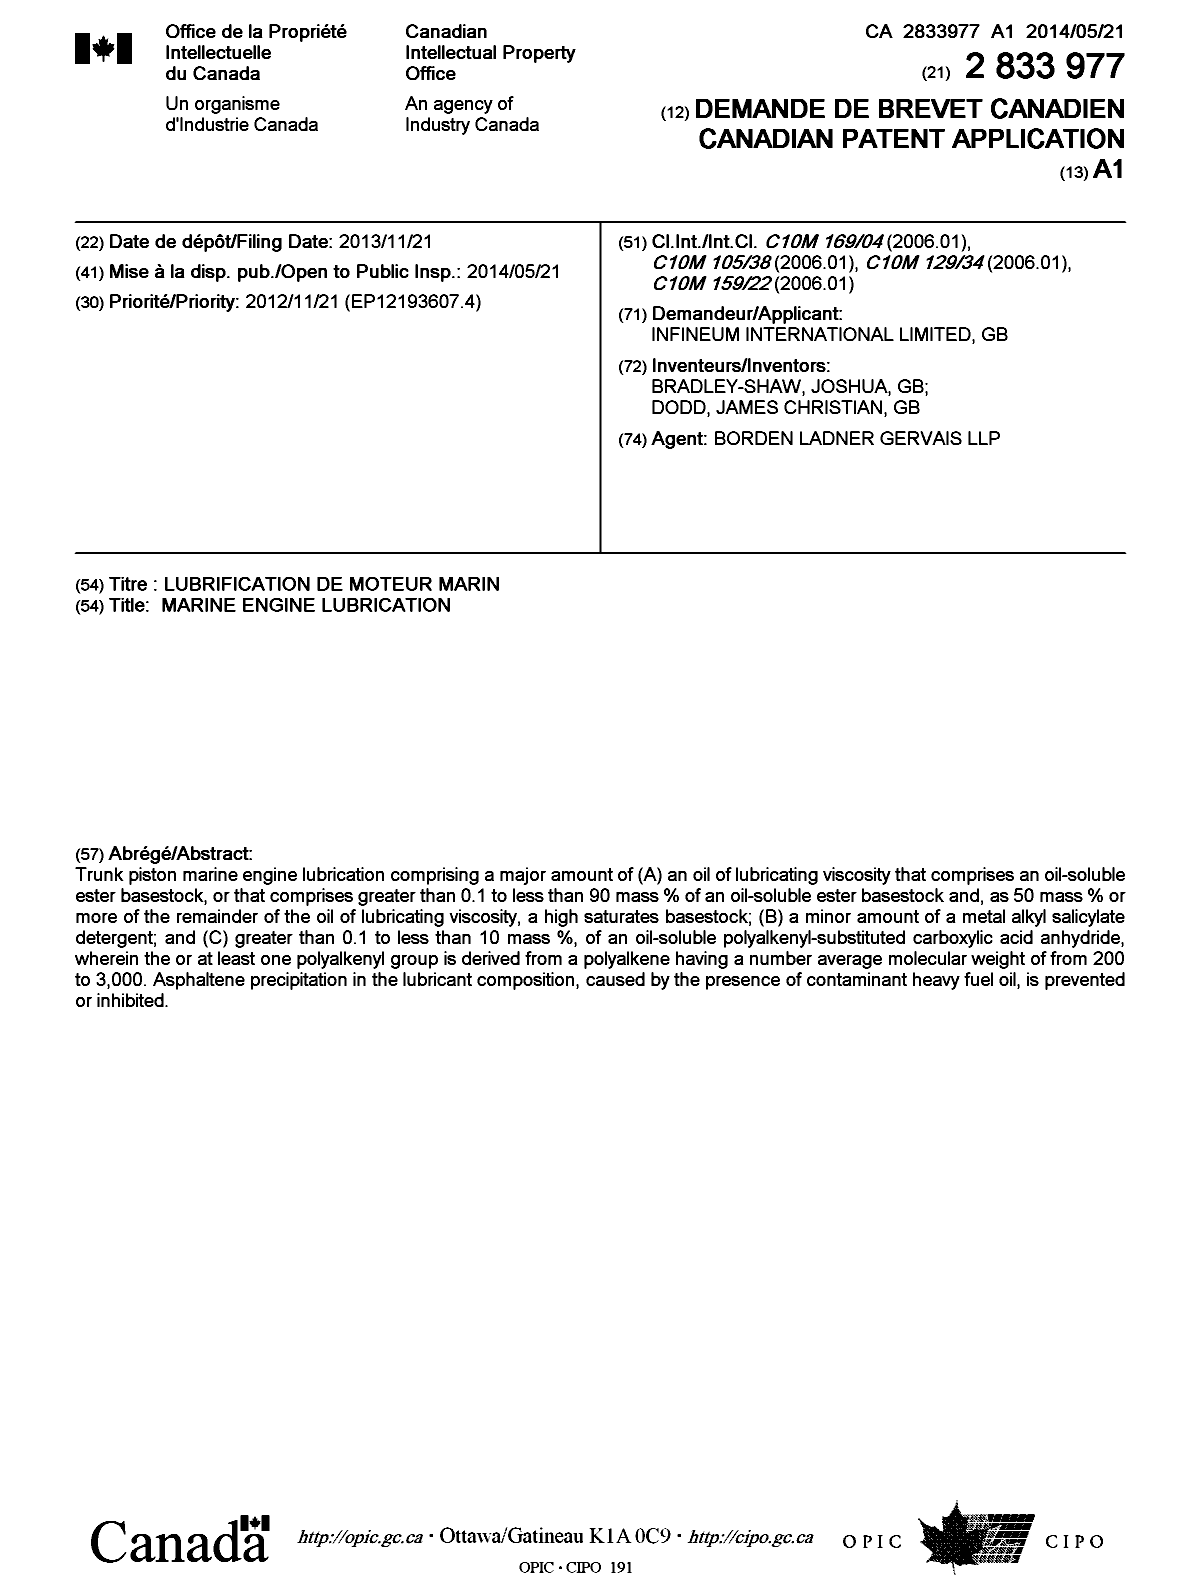 Document de brevet canadien 2833977. Page couverture 20140430. Image 1 de 1